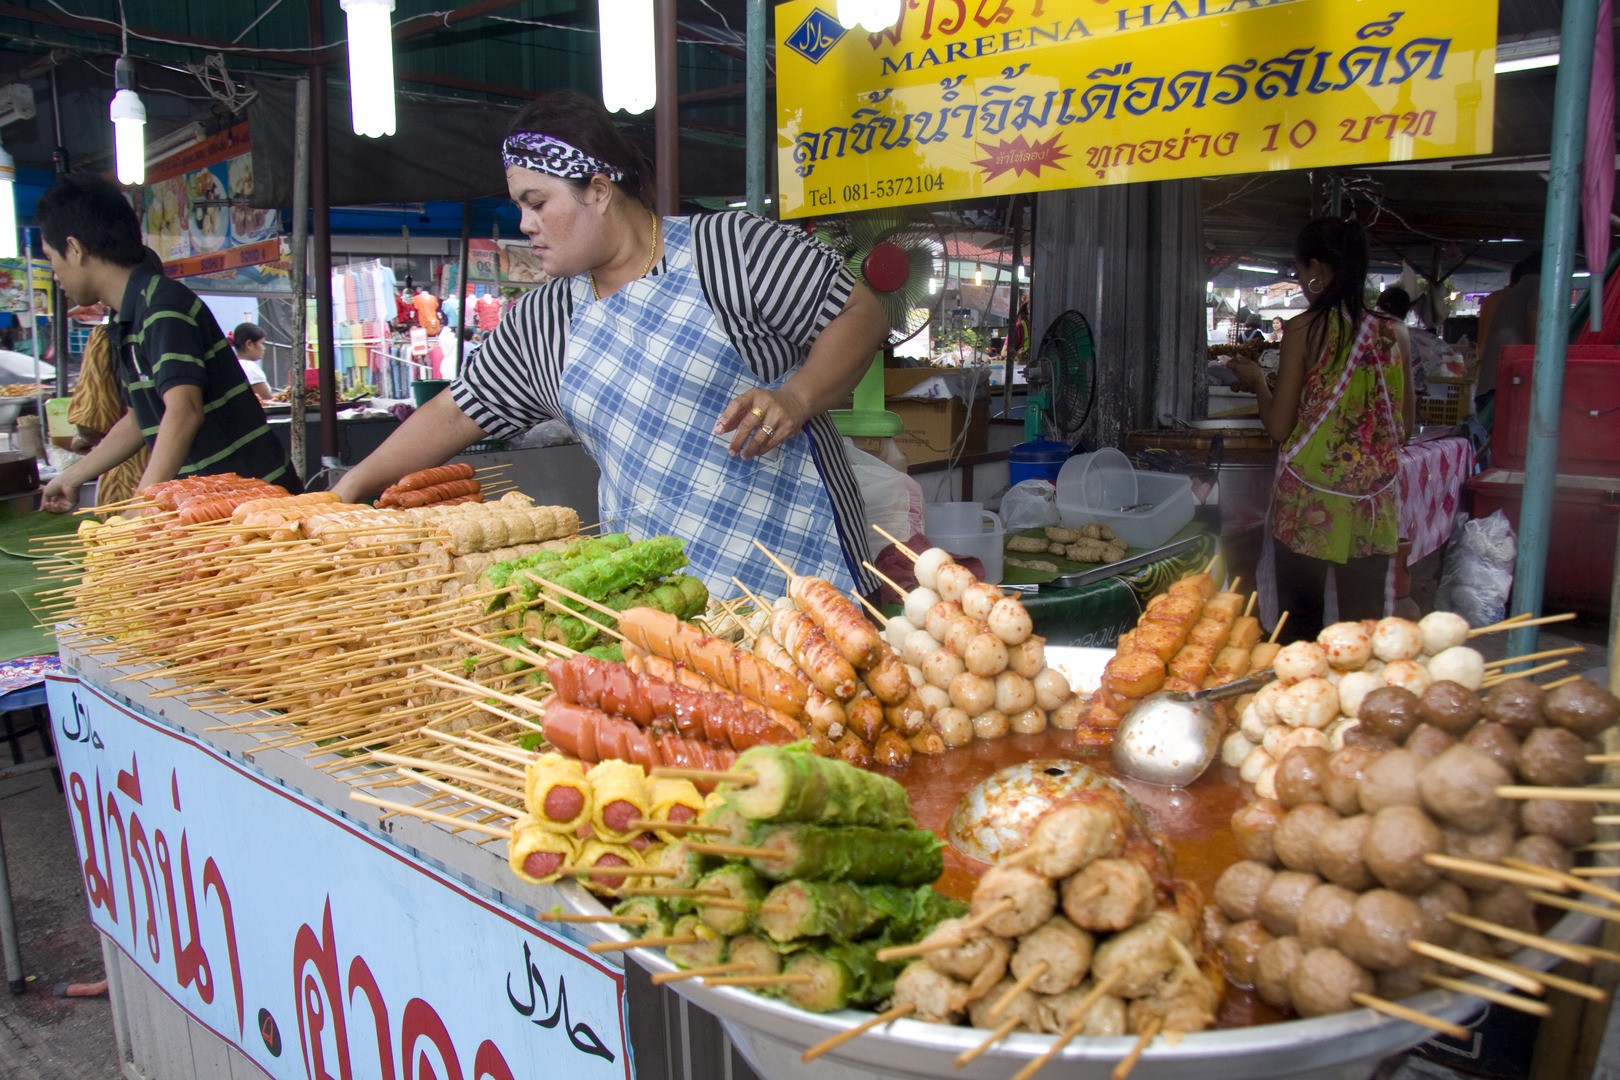 Как отдохнуть в таиланде дешево - 7 главных правил!